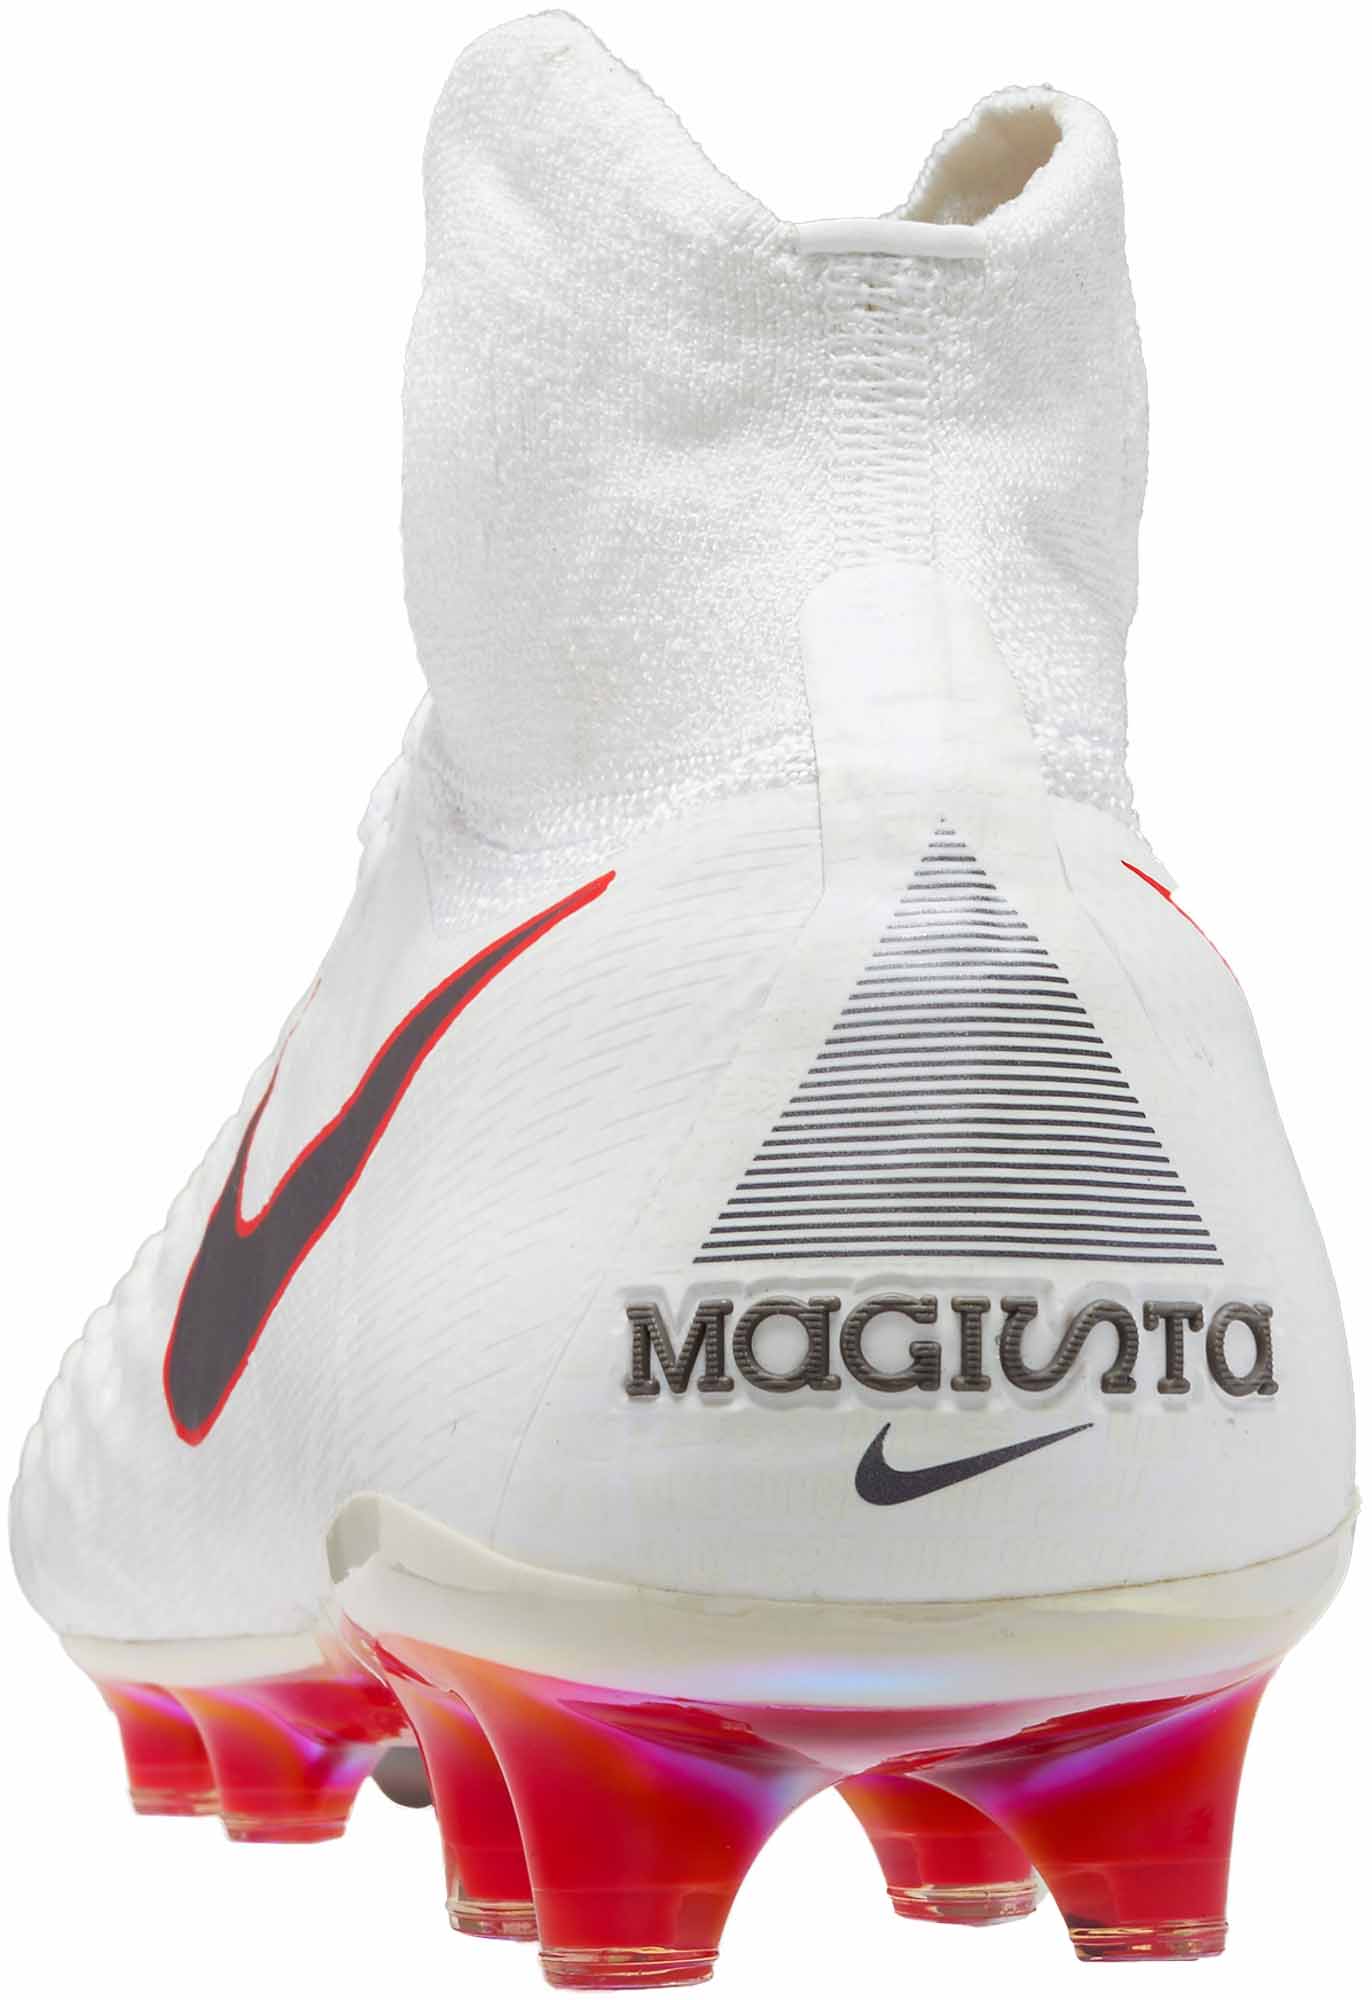 Nike Magista Obra II Elite FG - White & Metallic Cool Grey - Master